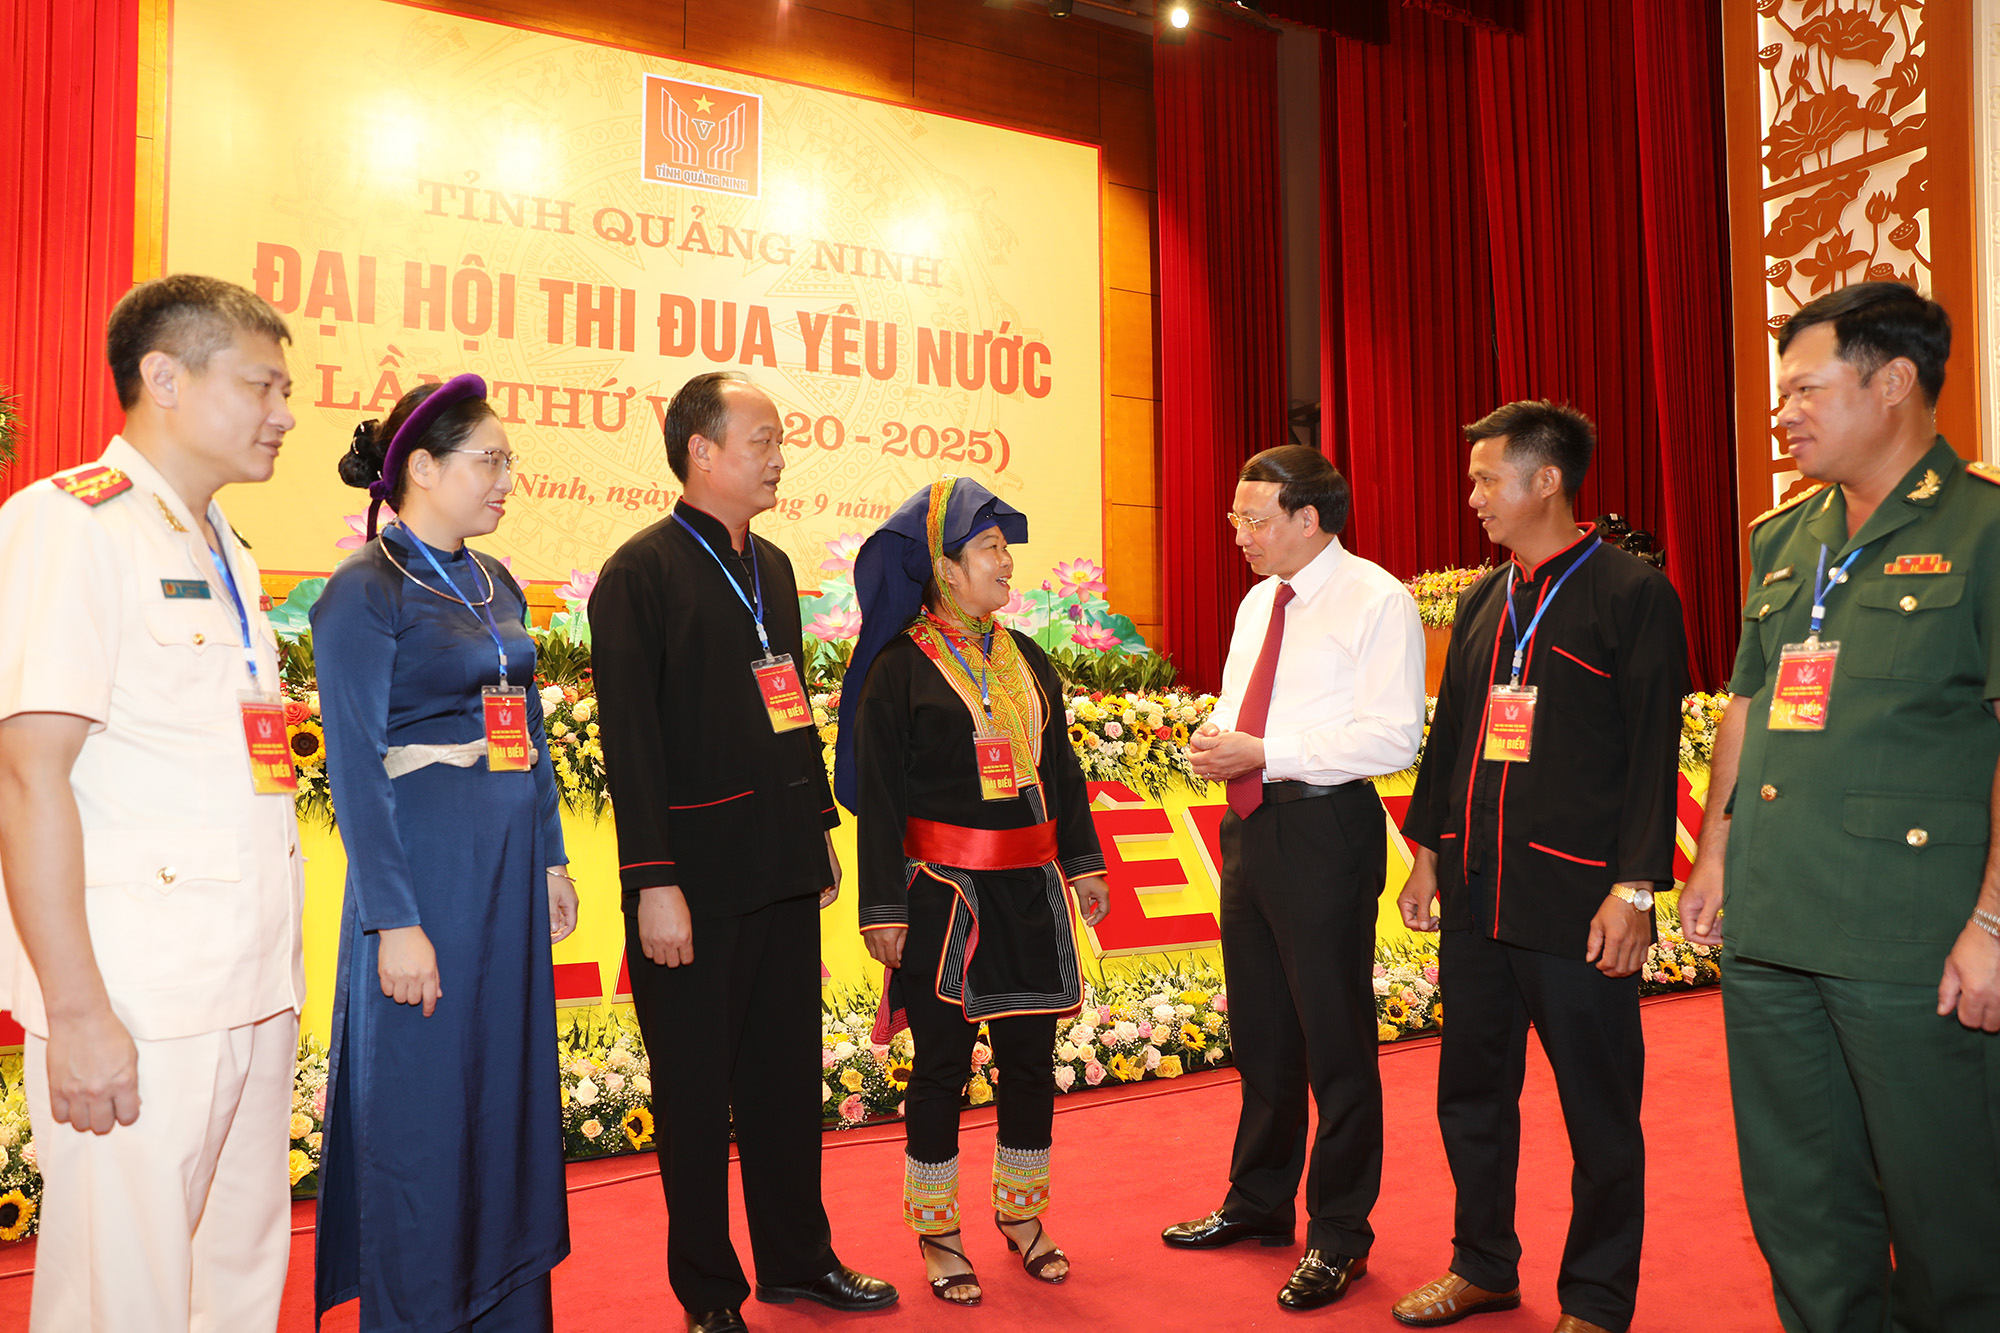 Đồng chí Nguyễn Xuân Ký, Bí thư Tỉnh ủy, Chủ tịch HĐND tỉnh, trò chuyện cùng các điển hình thi đua yêu nước. 